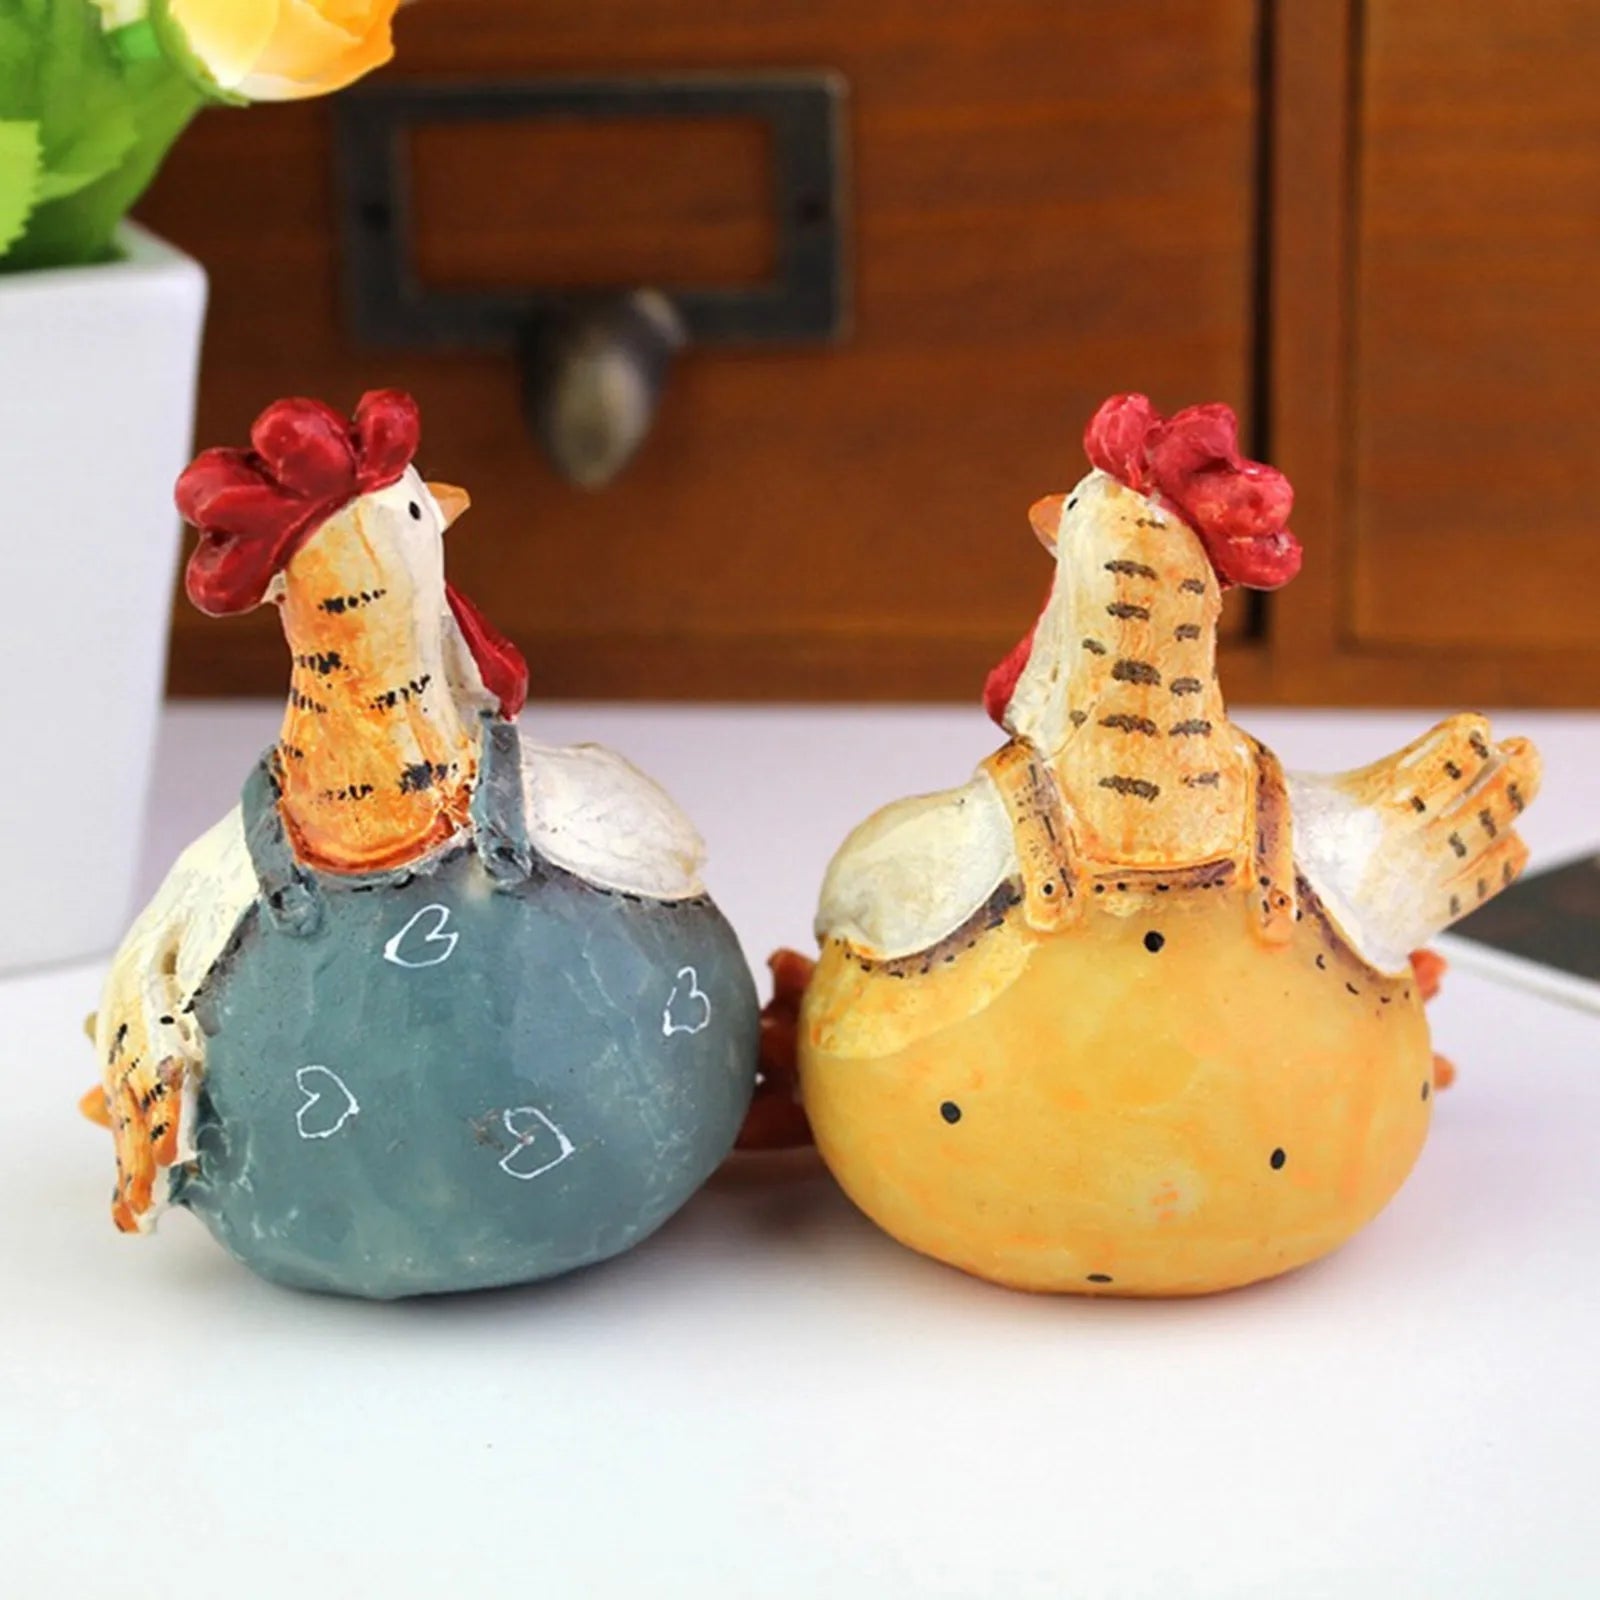 수지 공예 커플 쌍 치킨 홀리데이 장식 연구 거실 장식 홈 유리 장식 볼 공학 장식